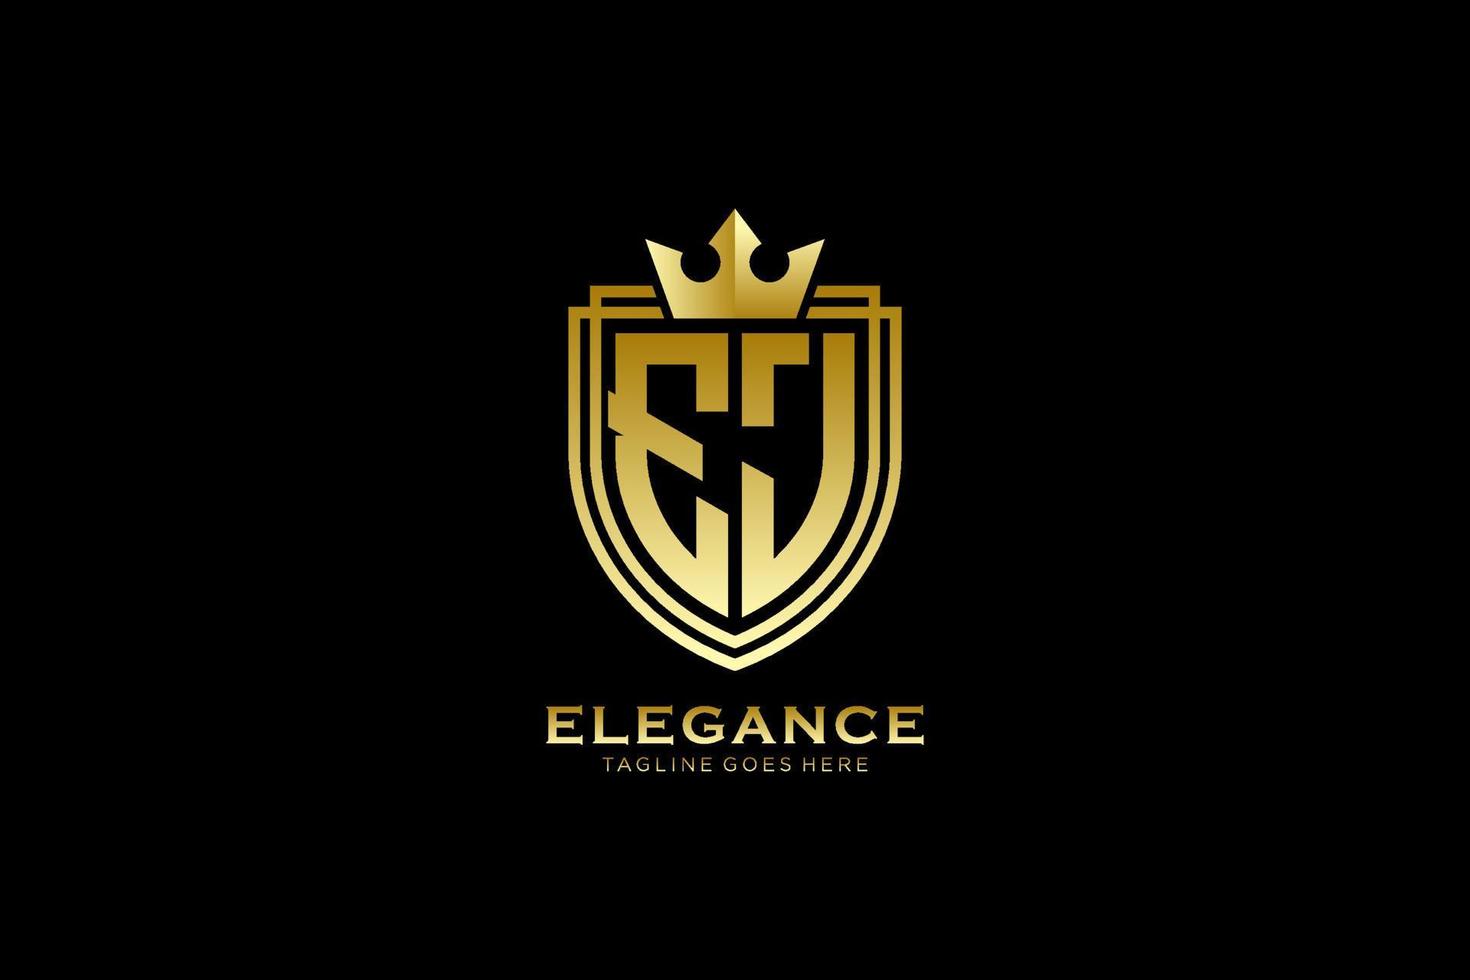 logo monogramme de luxe élégant initial ej ou modèle de badge avec volutes et couronne royale - parfait pour les projets de marque de luxe vecteur